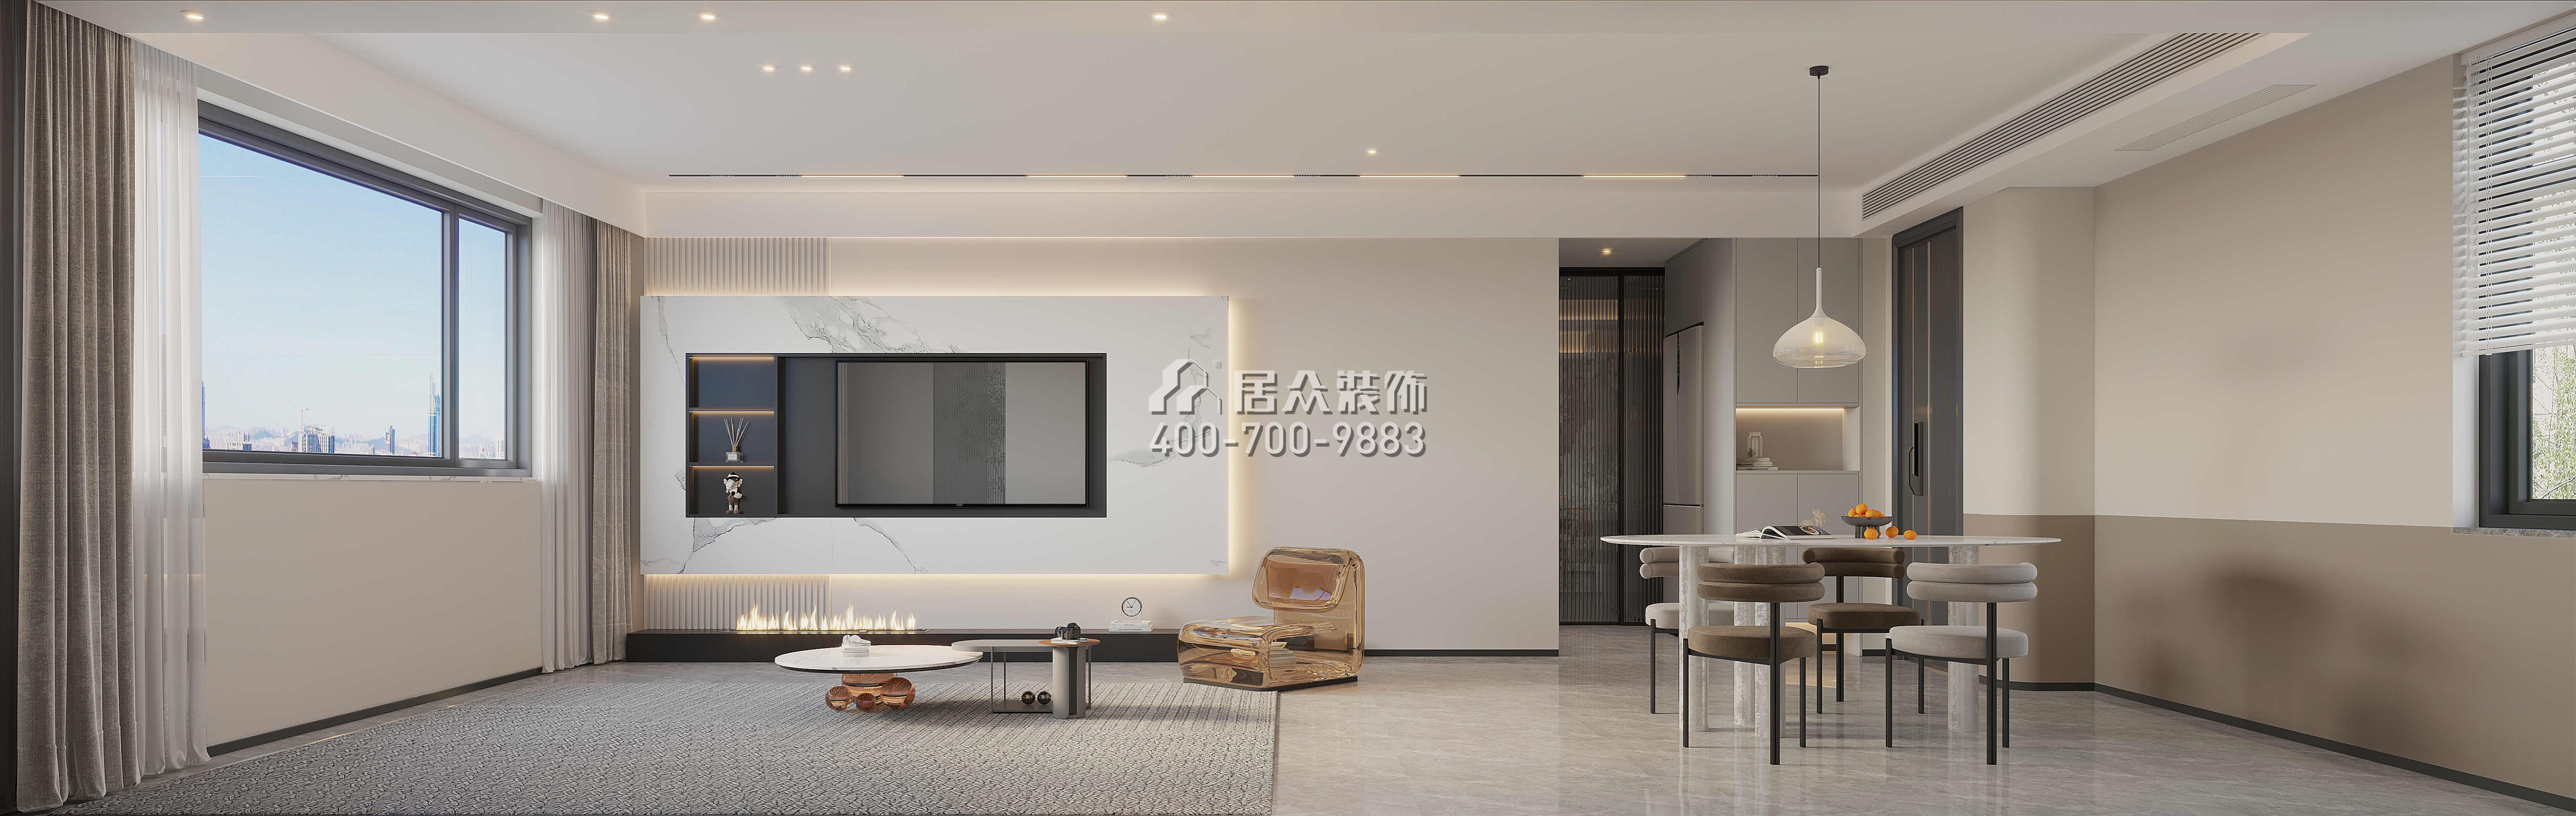 發展興苑120平方米現代簡約風格平層戶型客廳裝修效果圖